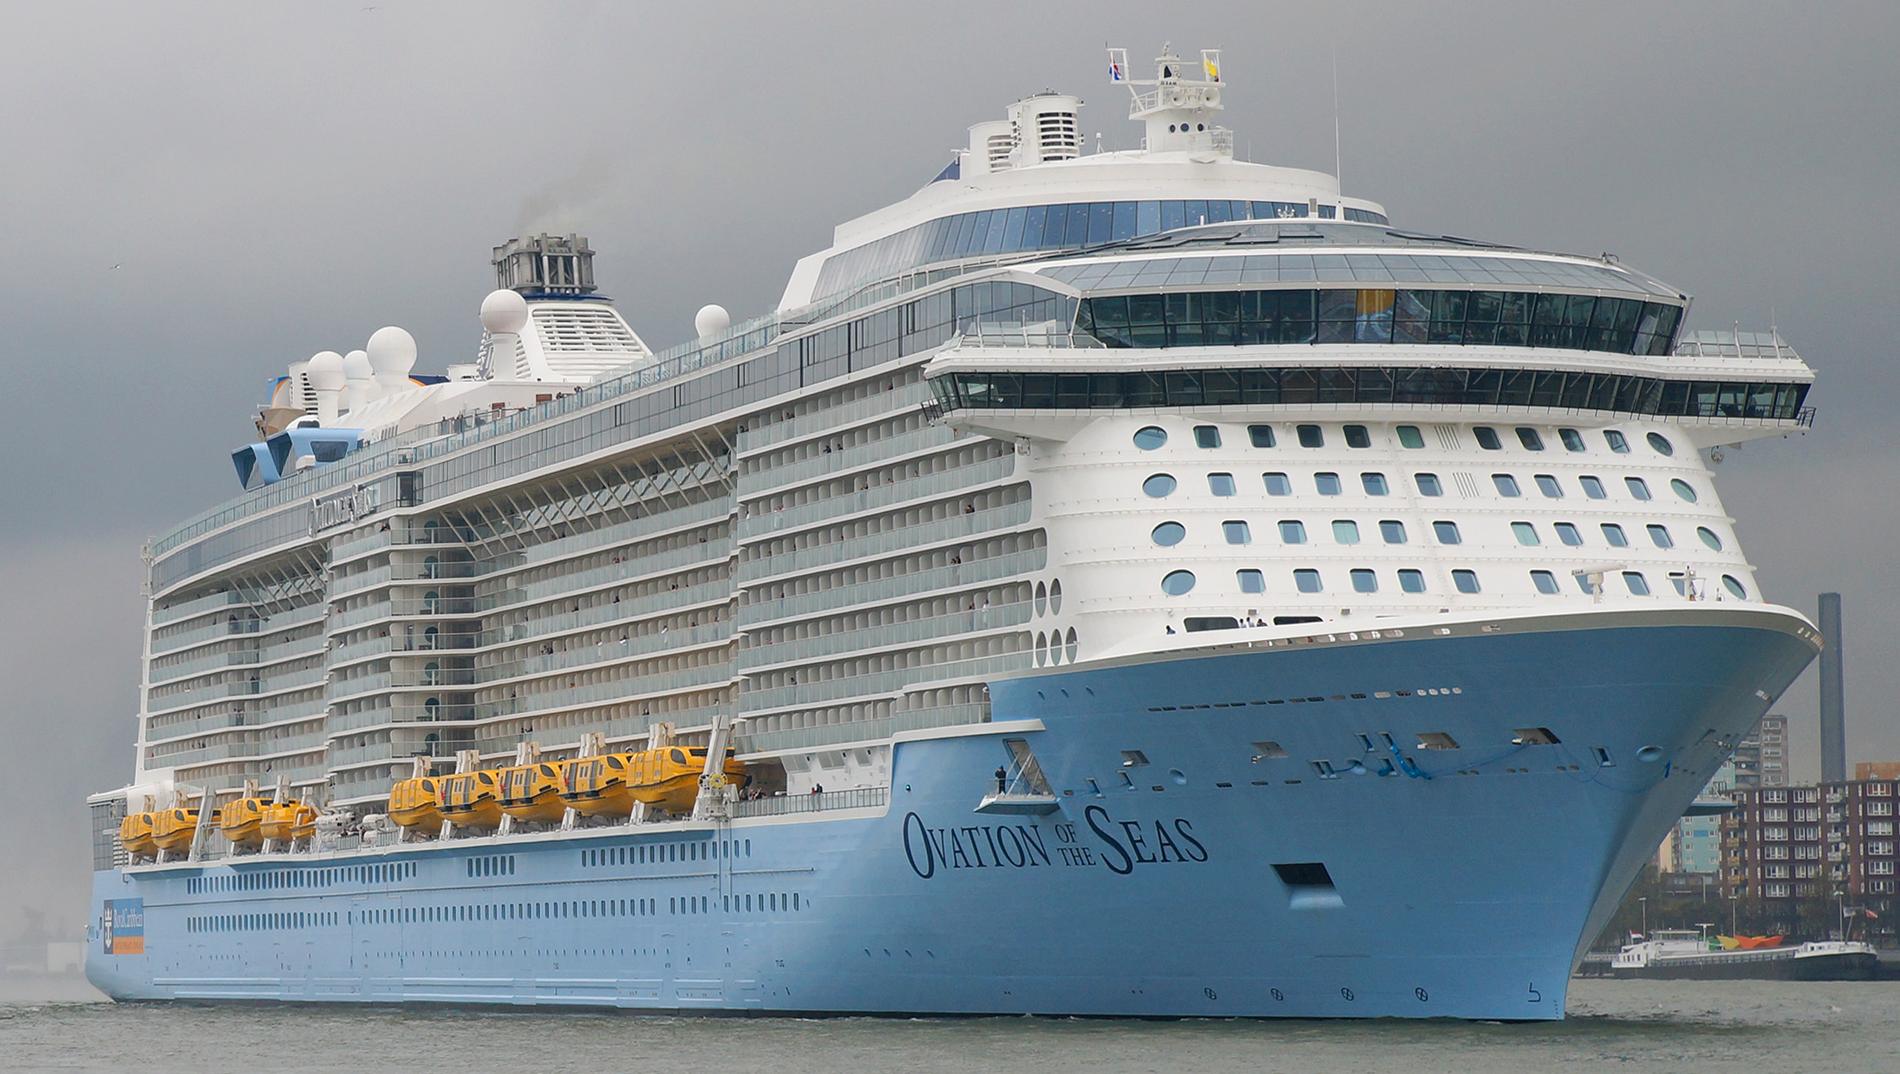 Många av besökarna uppges ha kommit från världens största kryssningsfartyg, Ovation of the Seas.